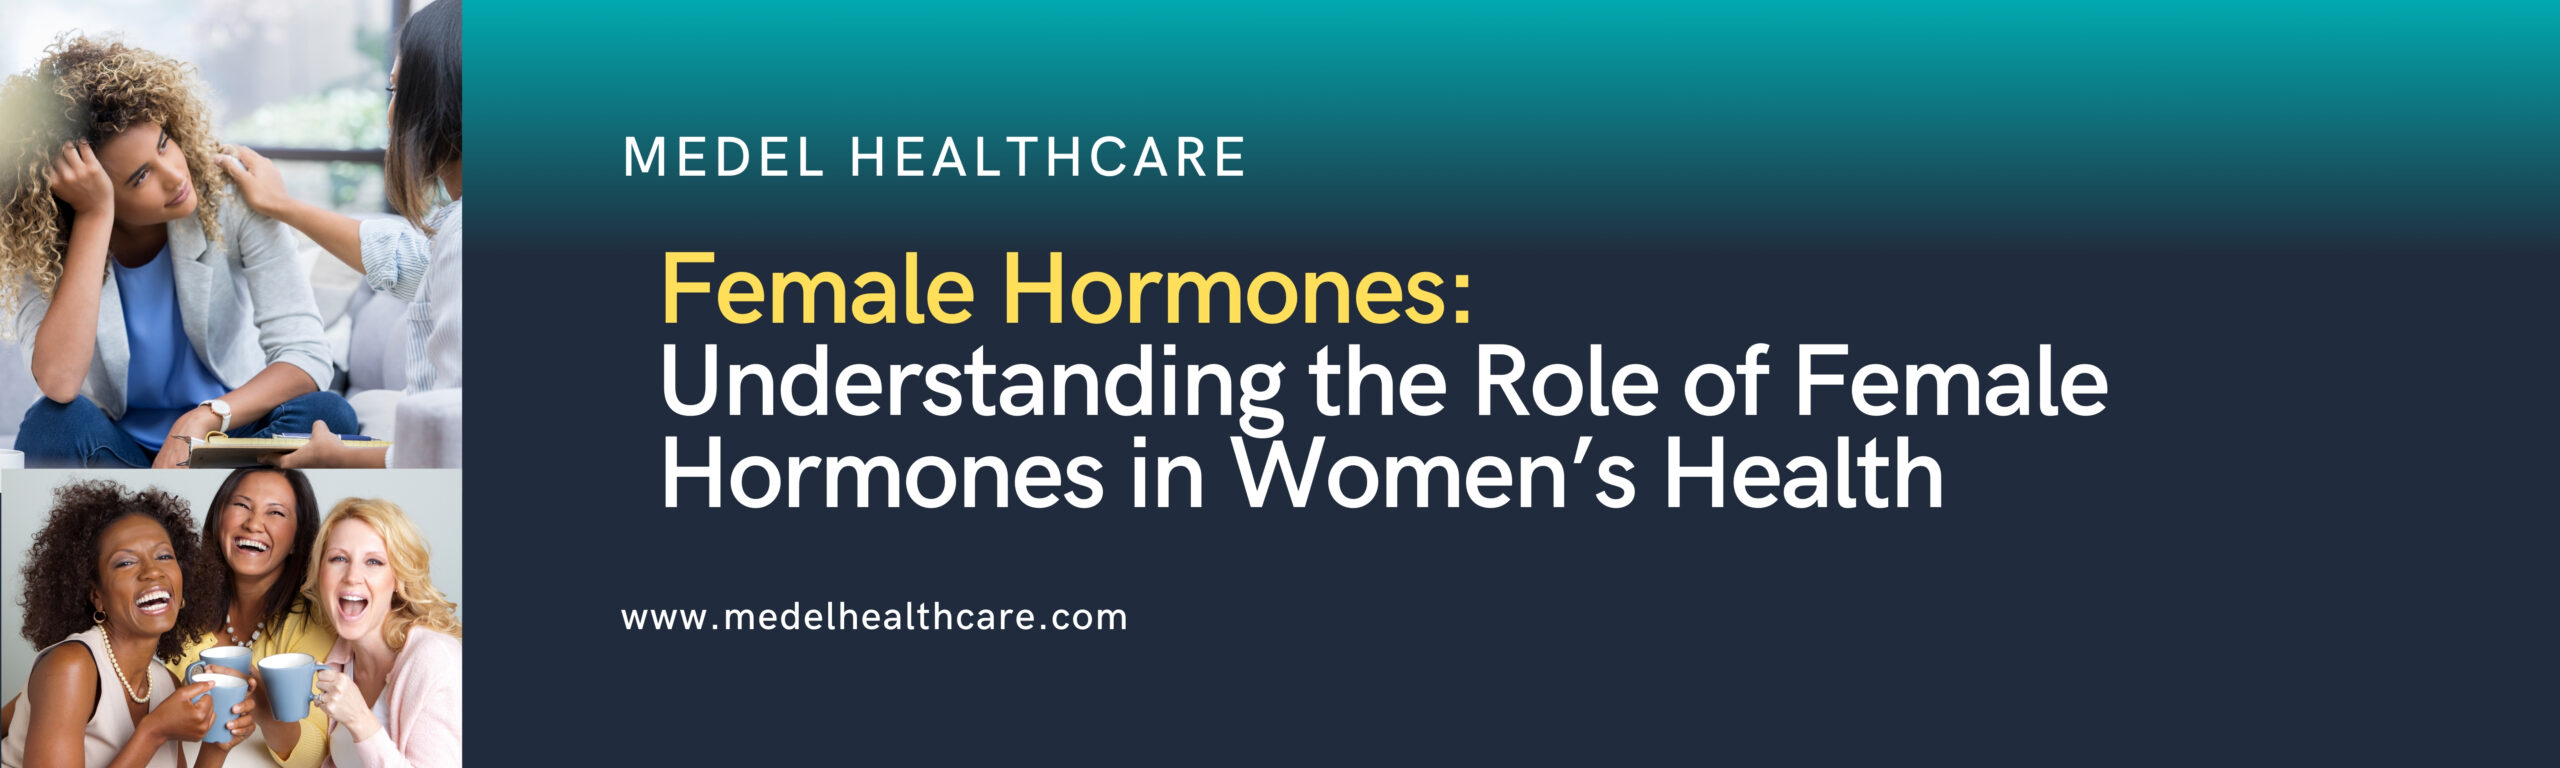 Female Hormones: Understanding the Role of Female Hormones in Women’s Health